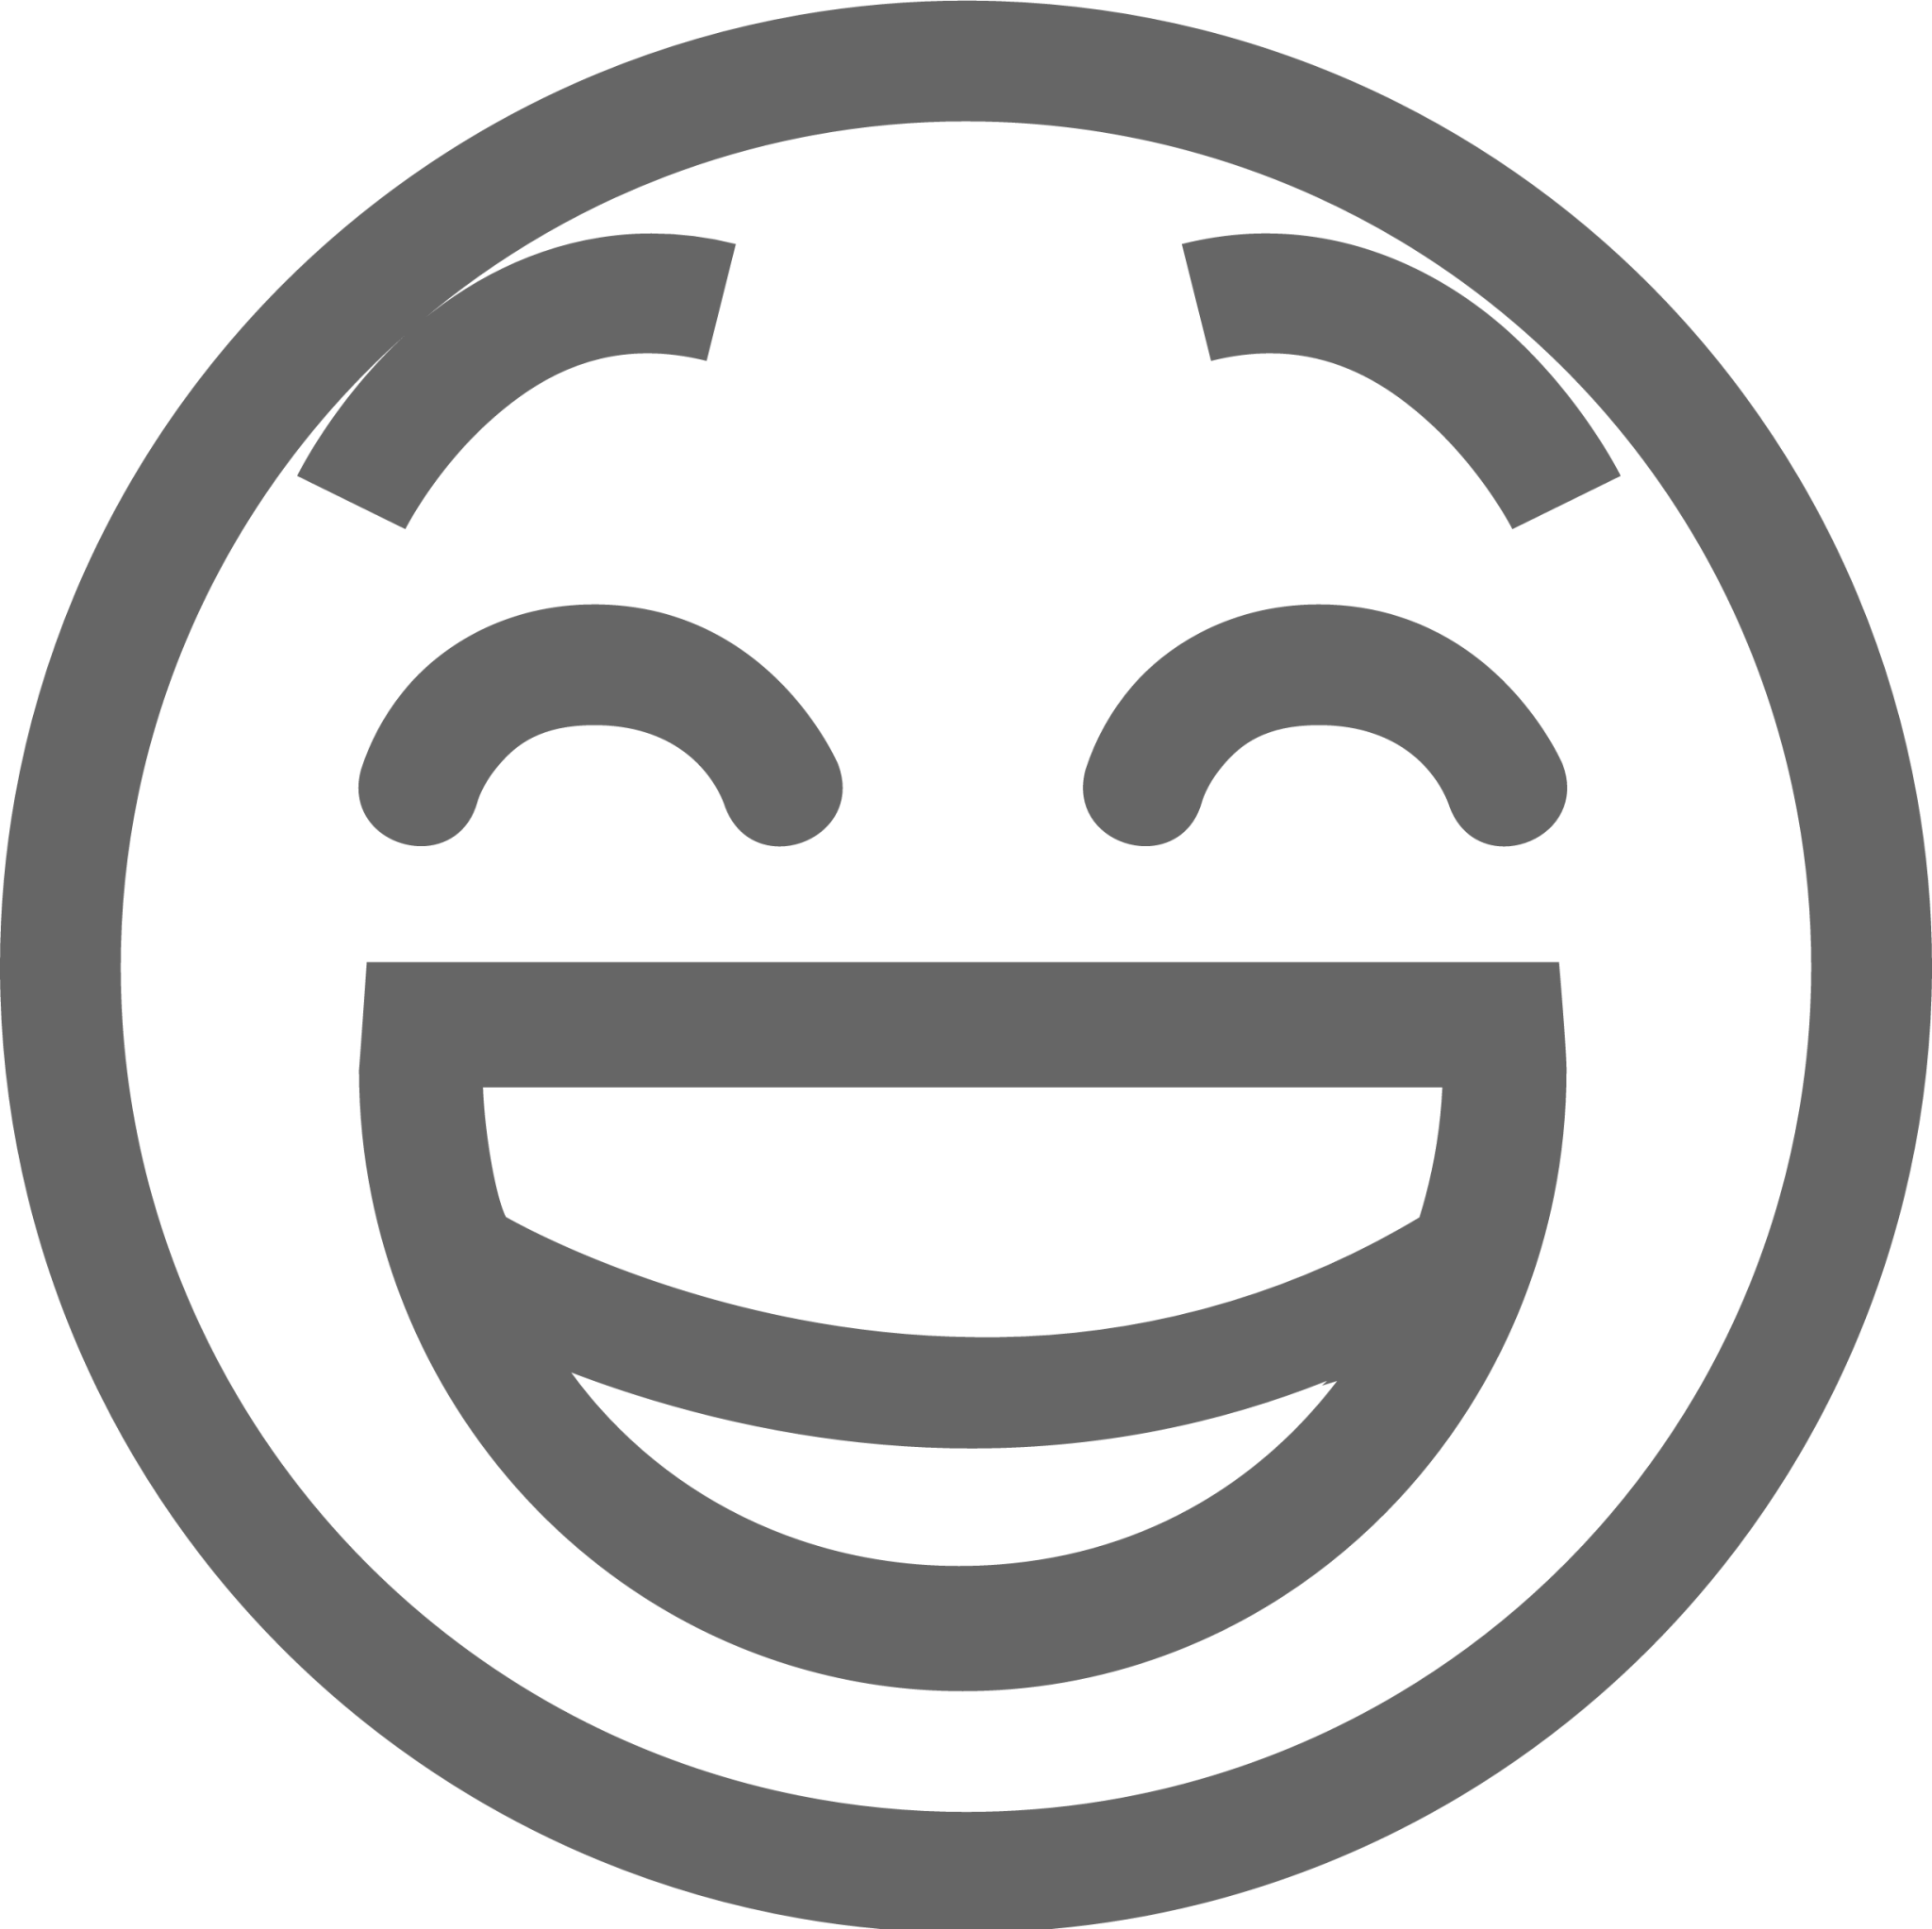 face laugh symbolic icon